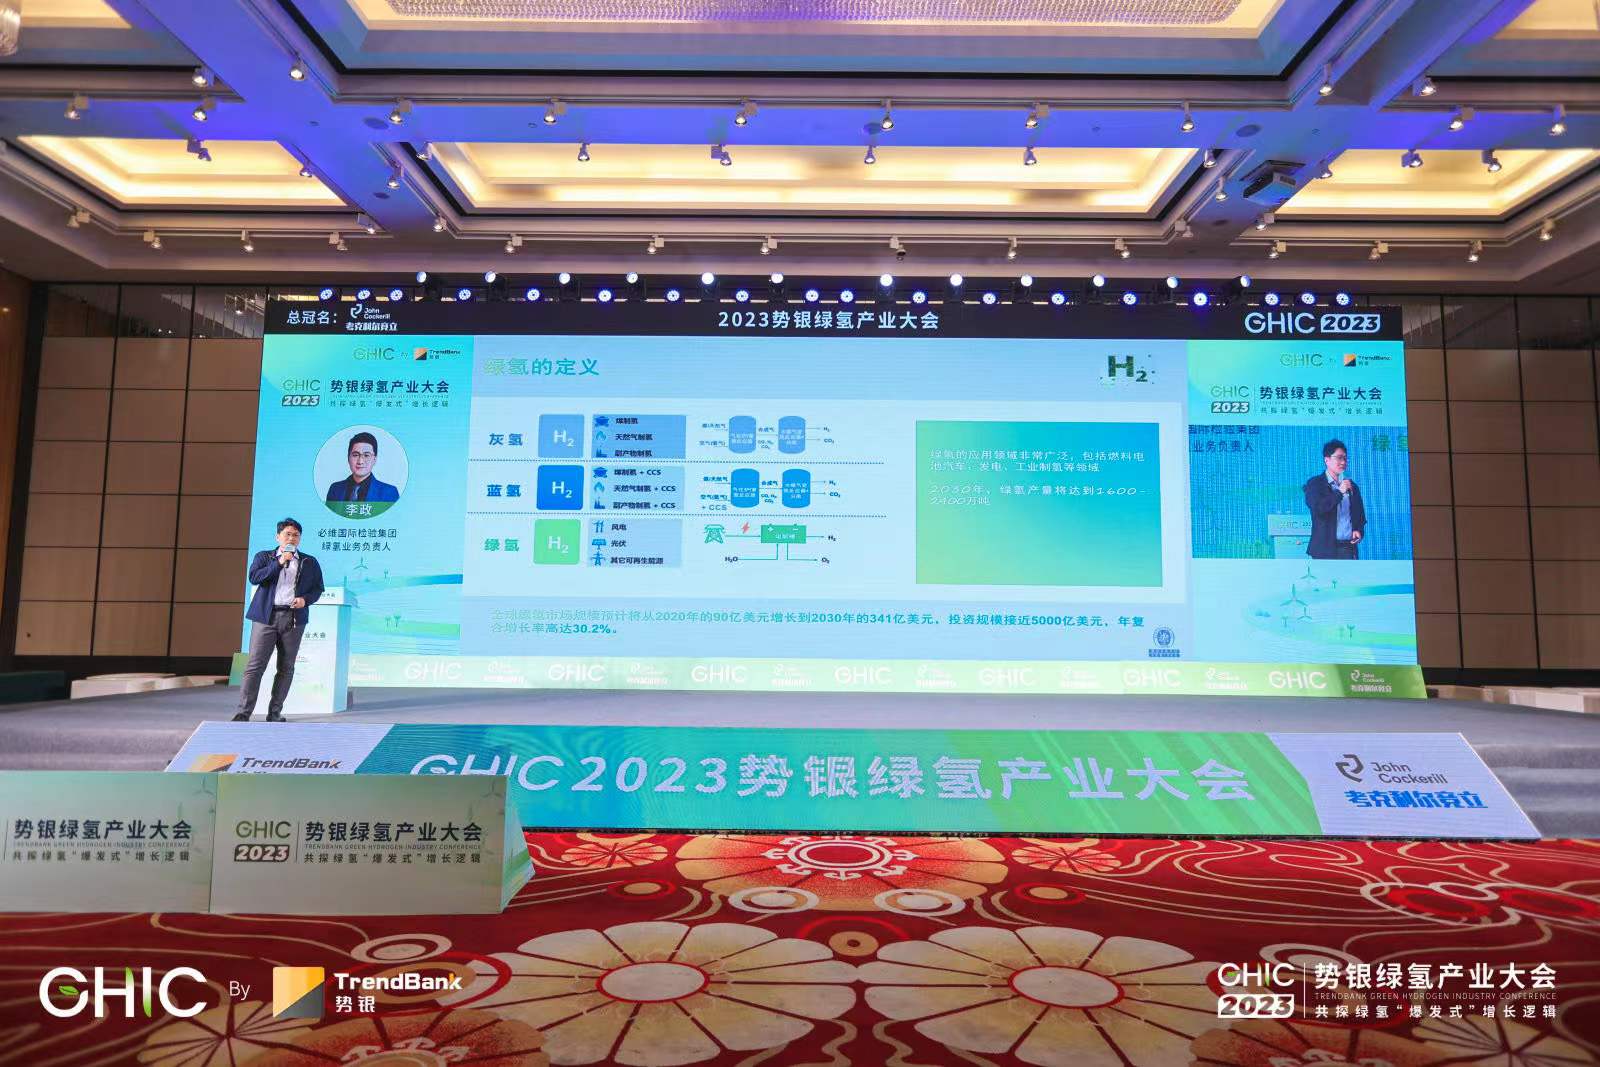 必维氢能技术专家李政发表讲演《绿氢绿氨如何获得市场认可》